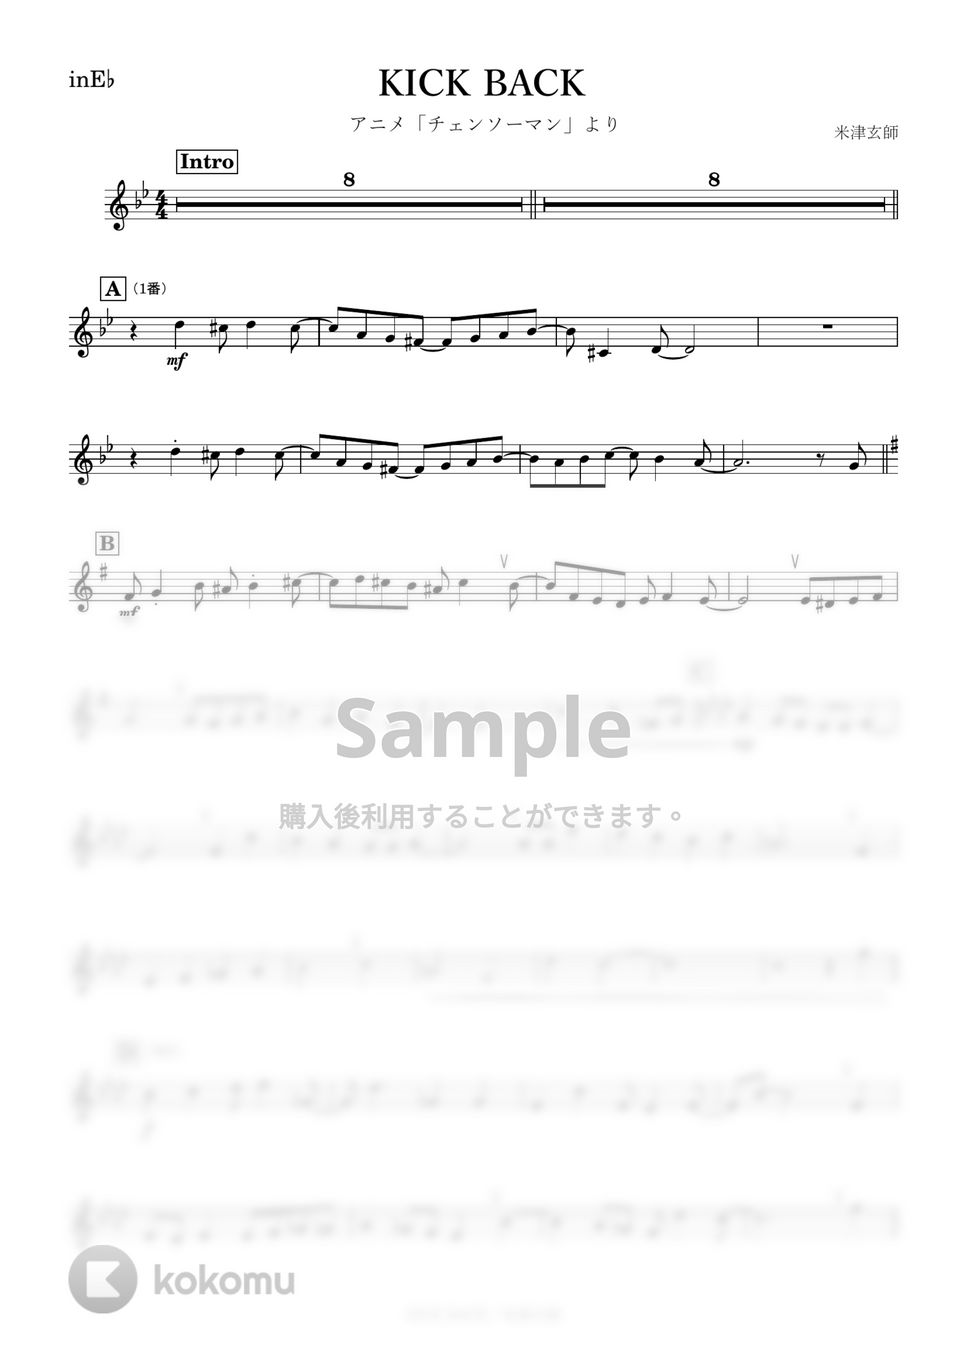 米津玄師 - KICK BACK (E♭) by kanamusic